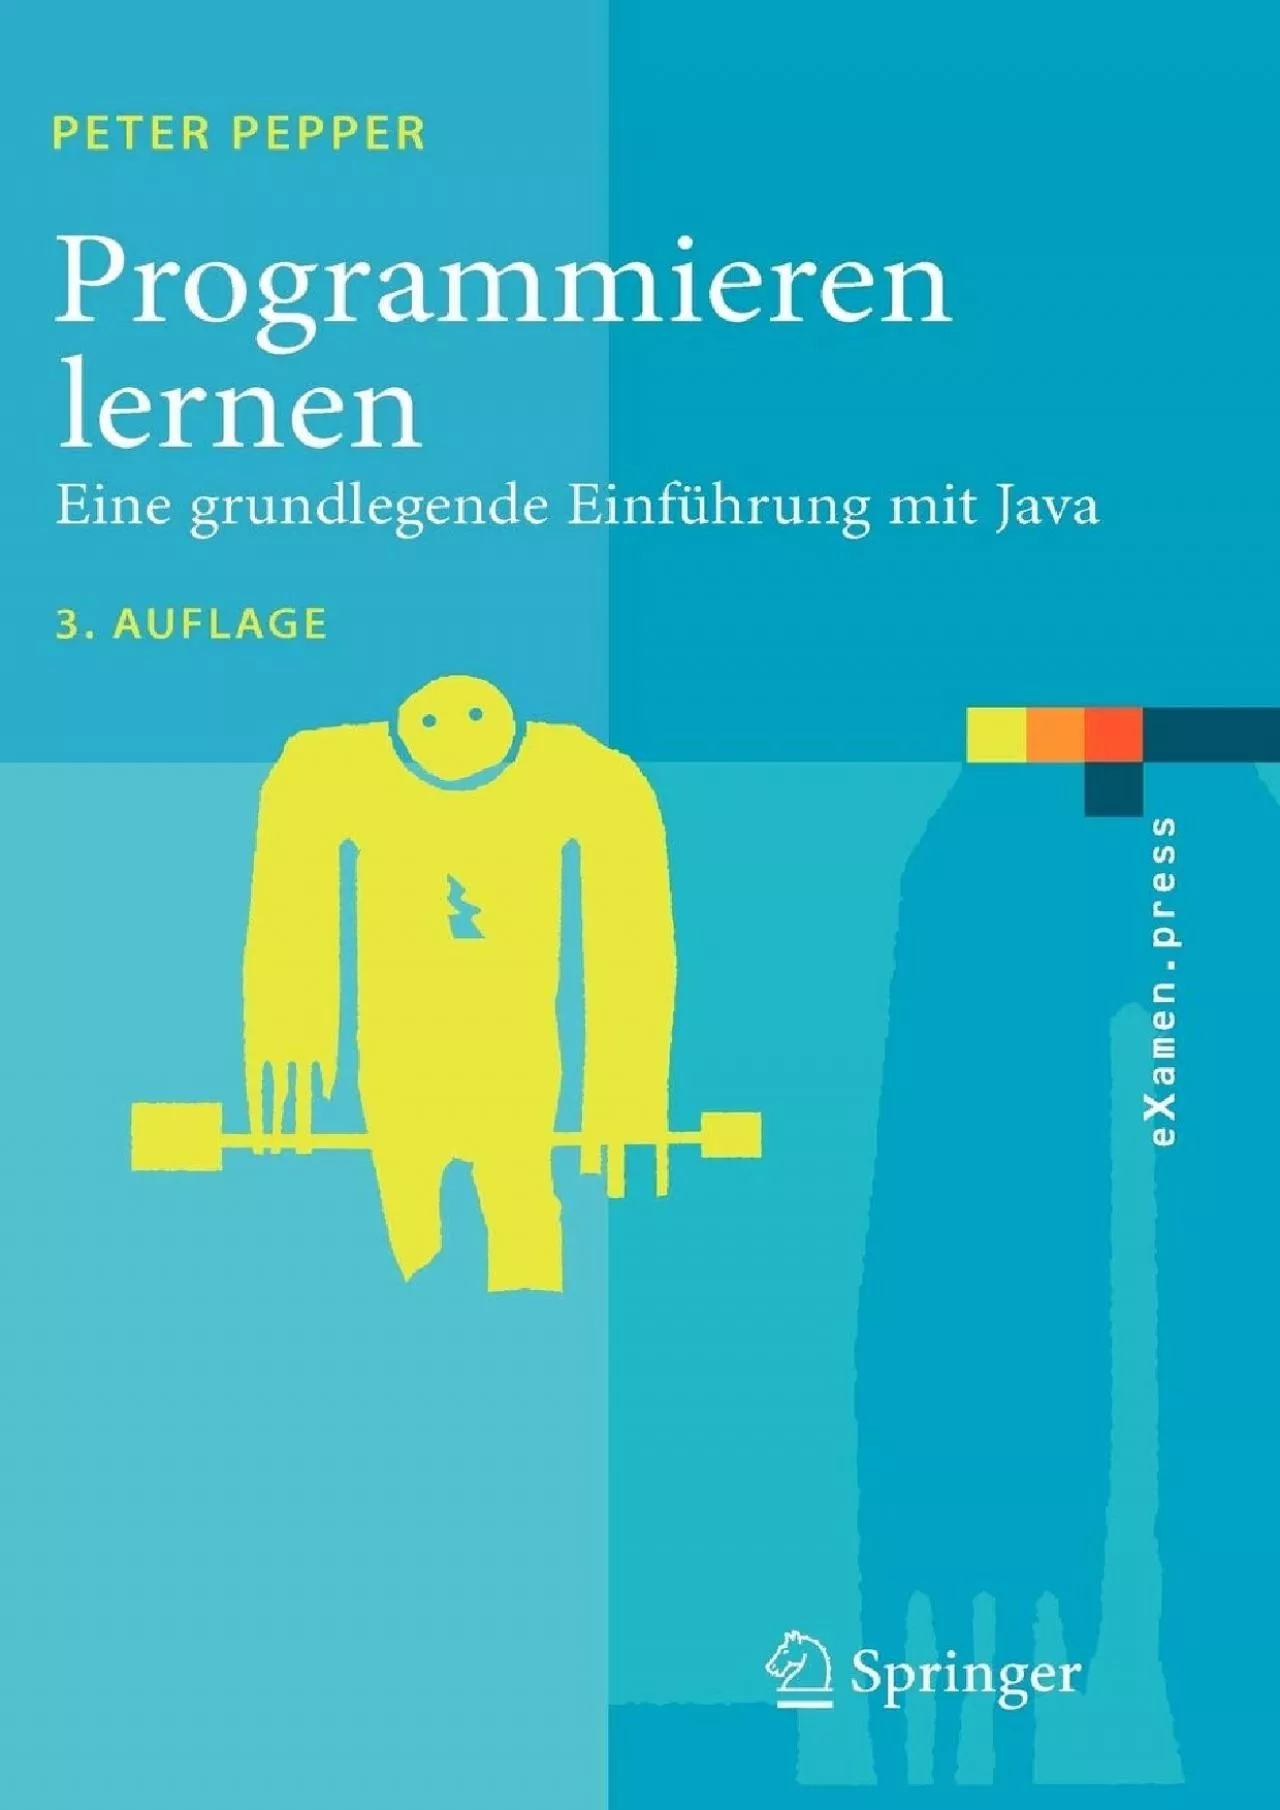 (READ)-Programmieren lernen: Eine grundlegende Einführung mit Java (eXamen.press) (German